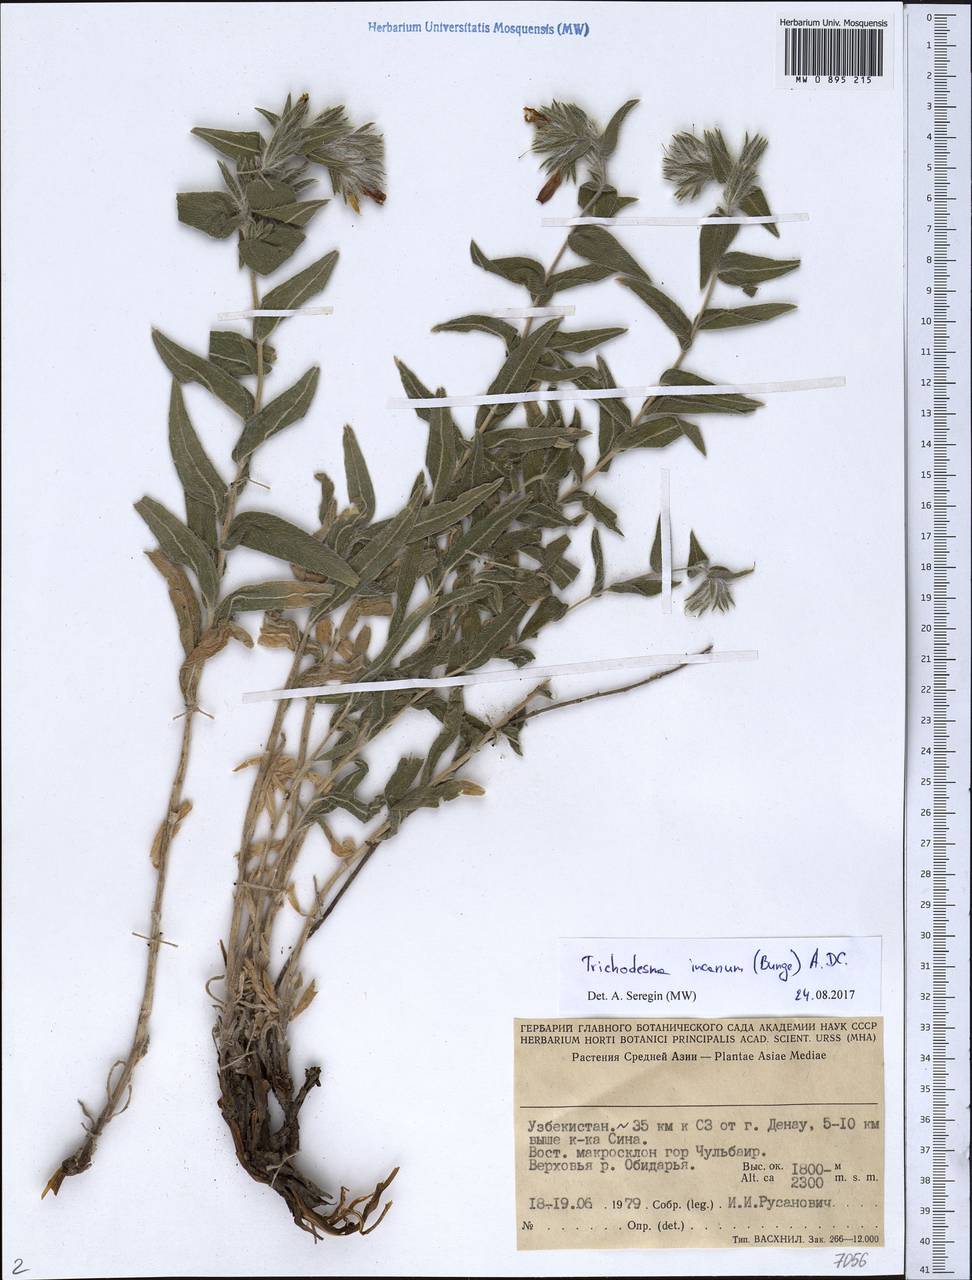 Boraginaceae, Средняя Азия и Казахстан, Памир и Памиро-Алай (M2) (Узбекистан)